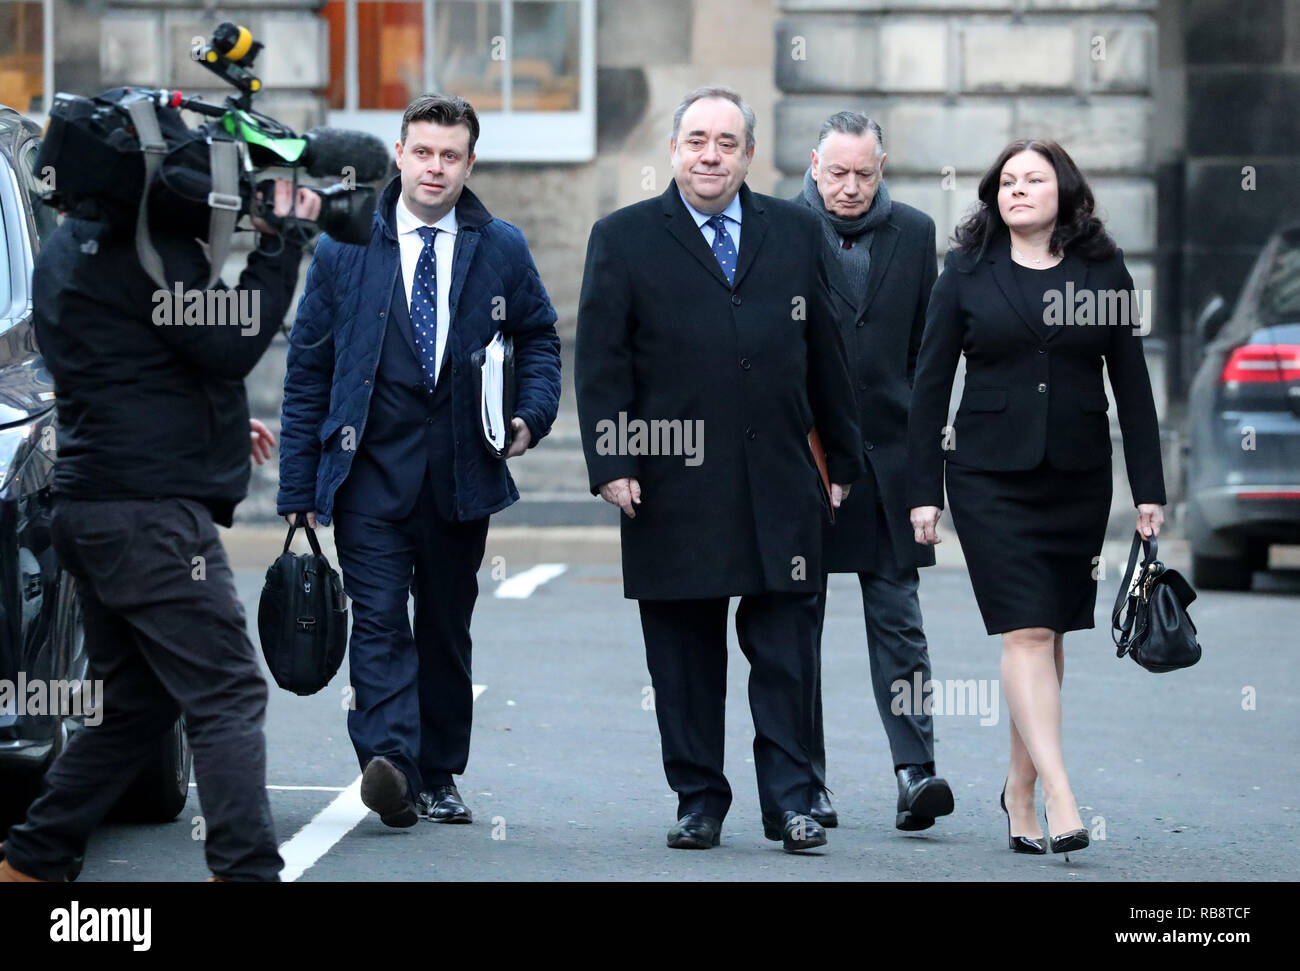 Alex Salmond (centre) arrivant avec procureurs David Mckie (à gauche), Beverley Atkinson (droite) et conseiller Campbell Gunn (deuxième à droite) à la Cour de session à Edimbourg pour l'ancien premier ministre défi juridique contre le gouvernement écossais a traité une plainte d'inconduite contre lui. Banque D'Images